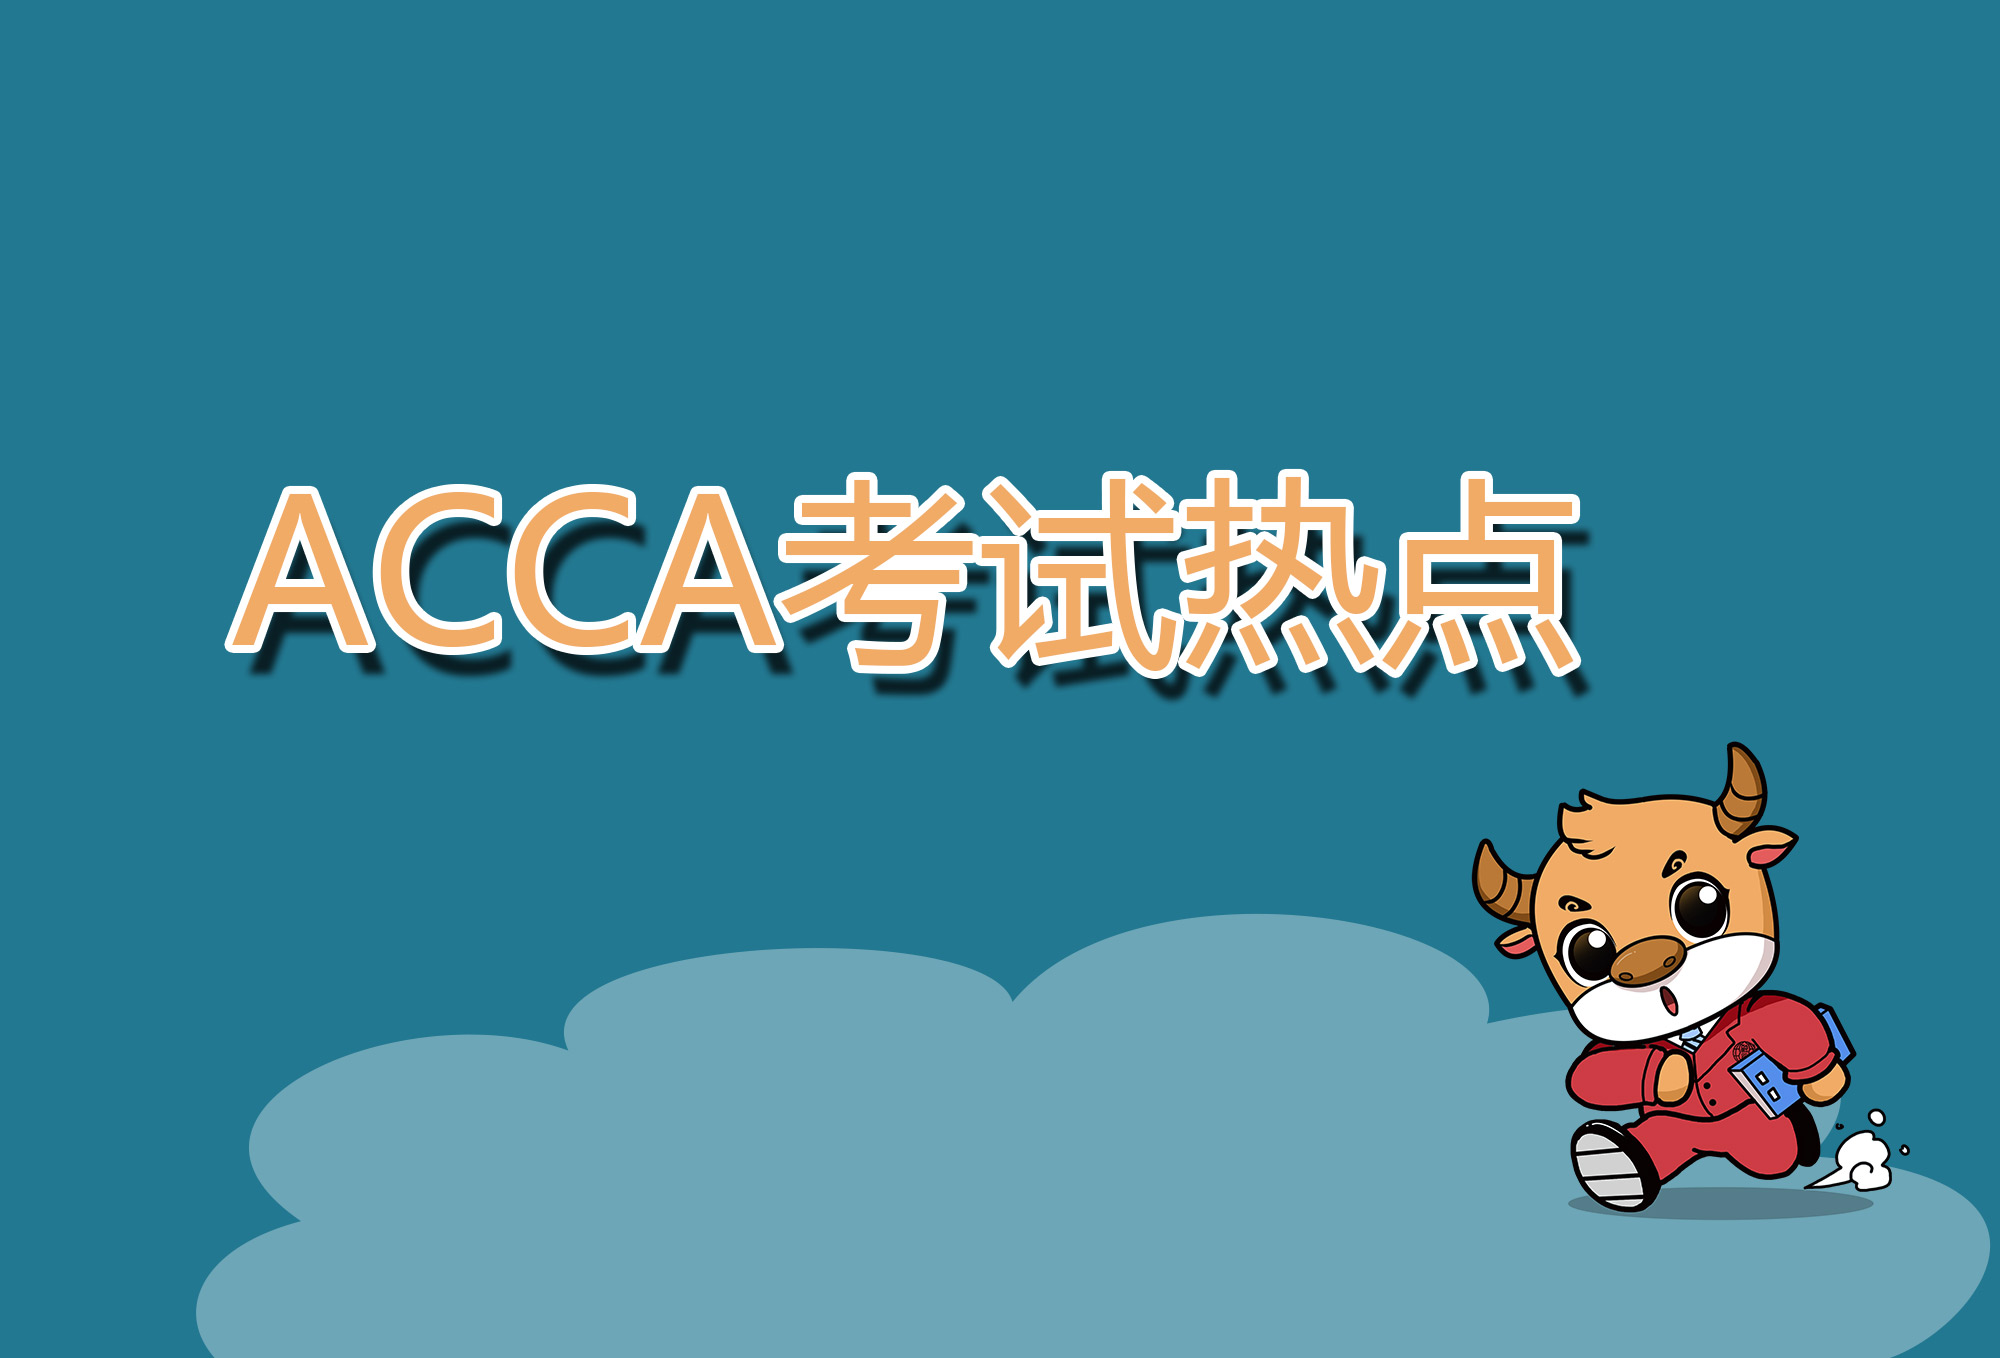 怎么理解ACCA考试Other important accounting concepts的内容？